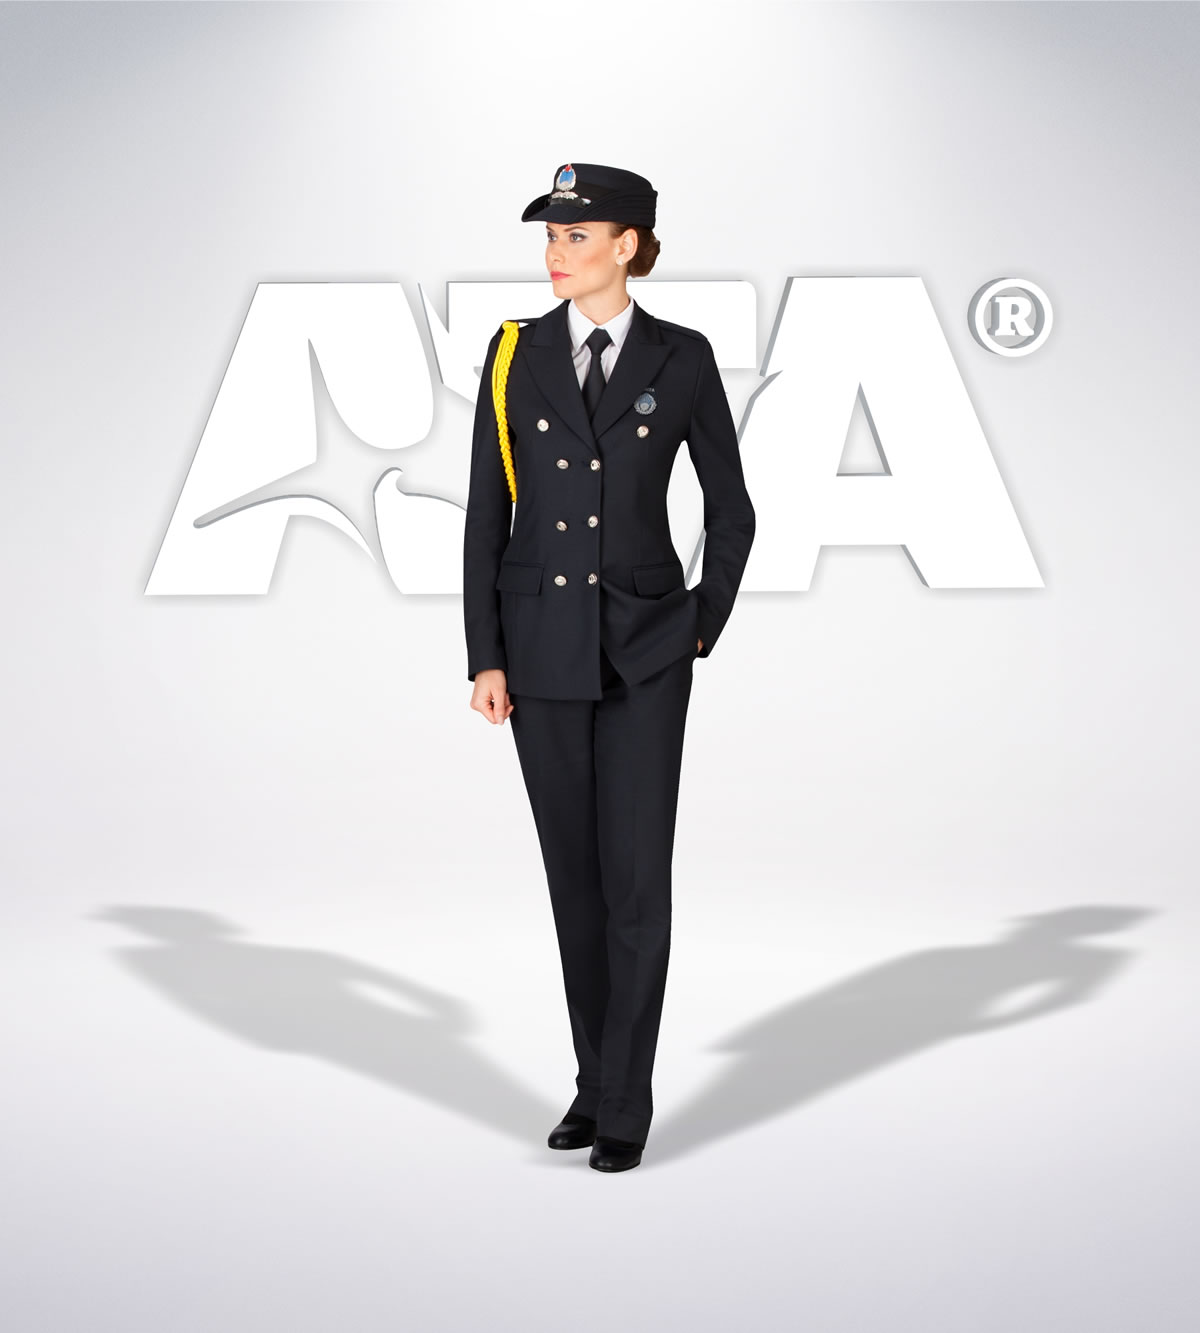 ATA 202 - Zabıta tören takımı - zabıta elbiseleri | zabıta üniformaları | zabıta kıyafetleri 